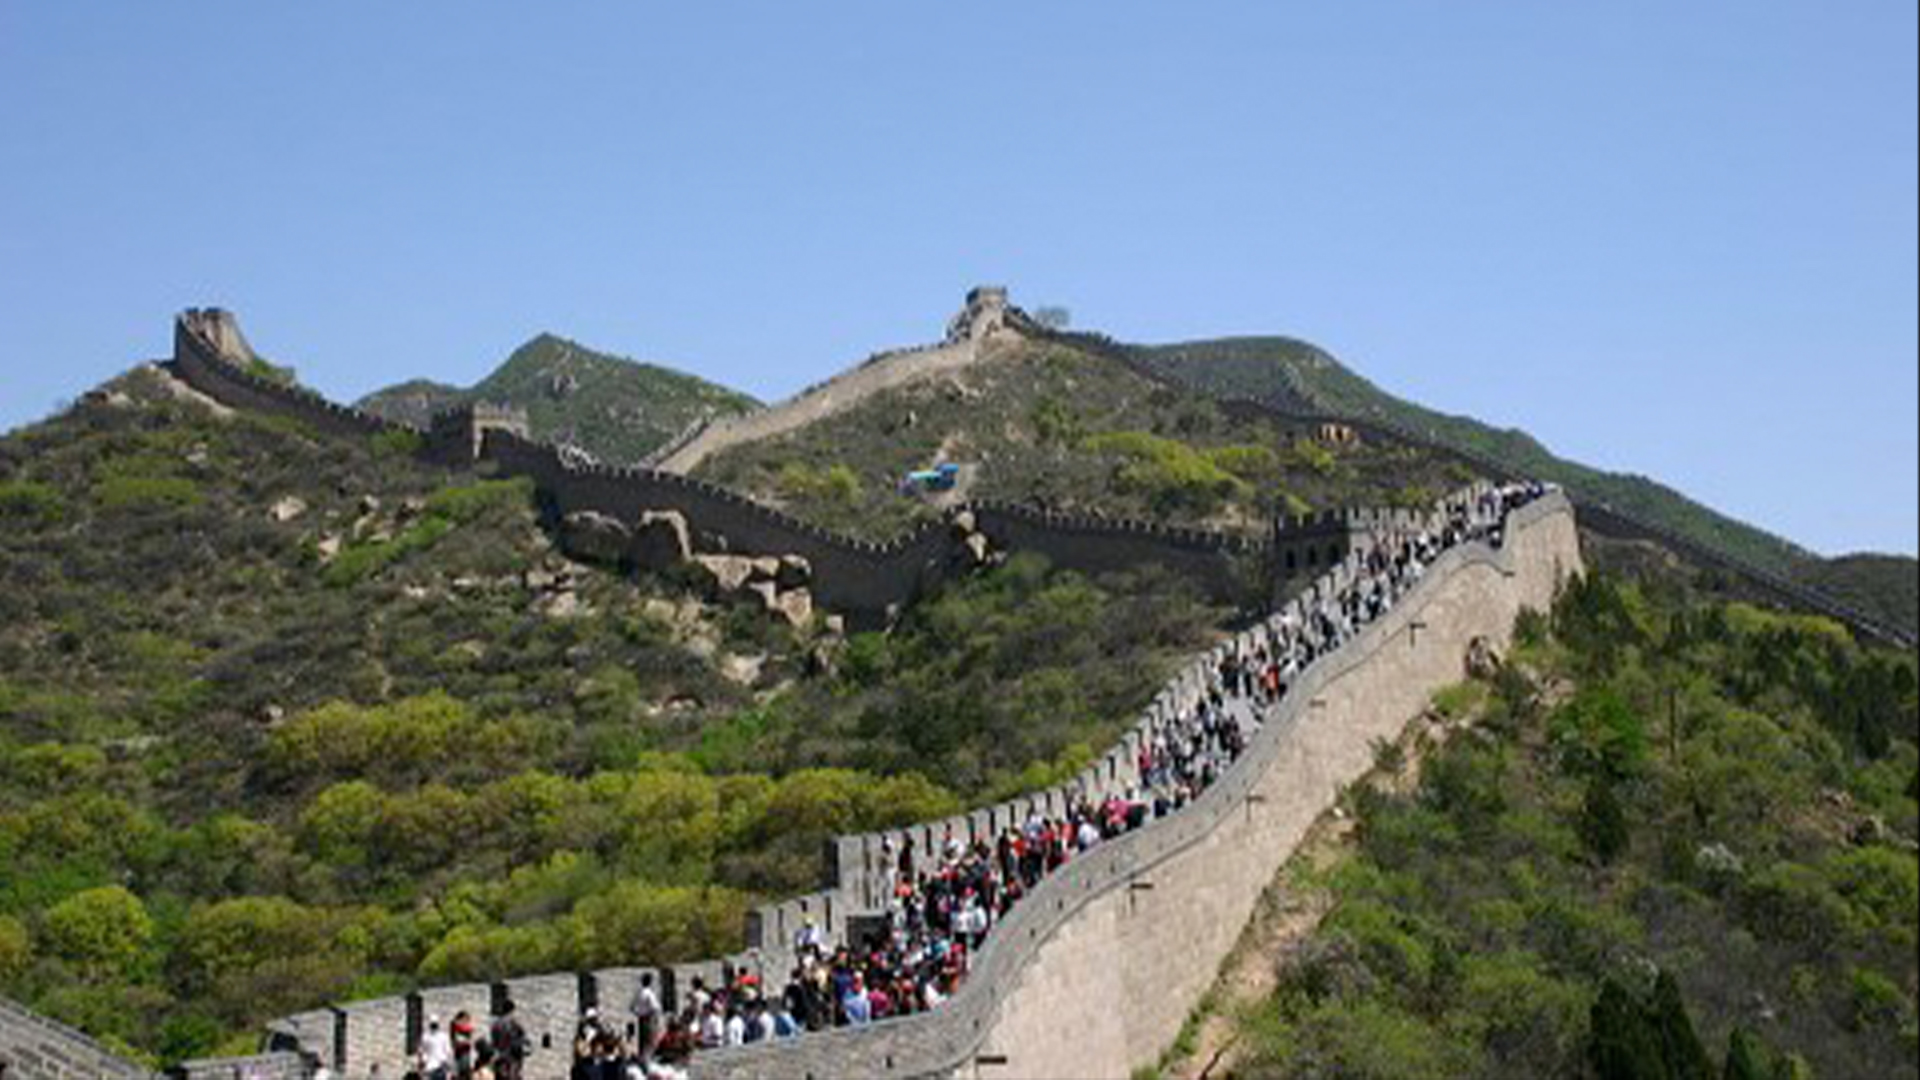 Голям участък от Великата китайска стена в Бадалинг, пълен с хора, докато се разхождат по билото.  Великата стена пресича зелена планинска верига под синьо небе.